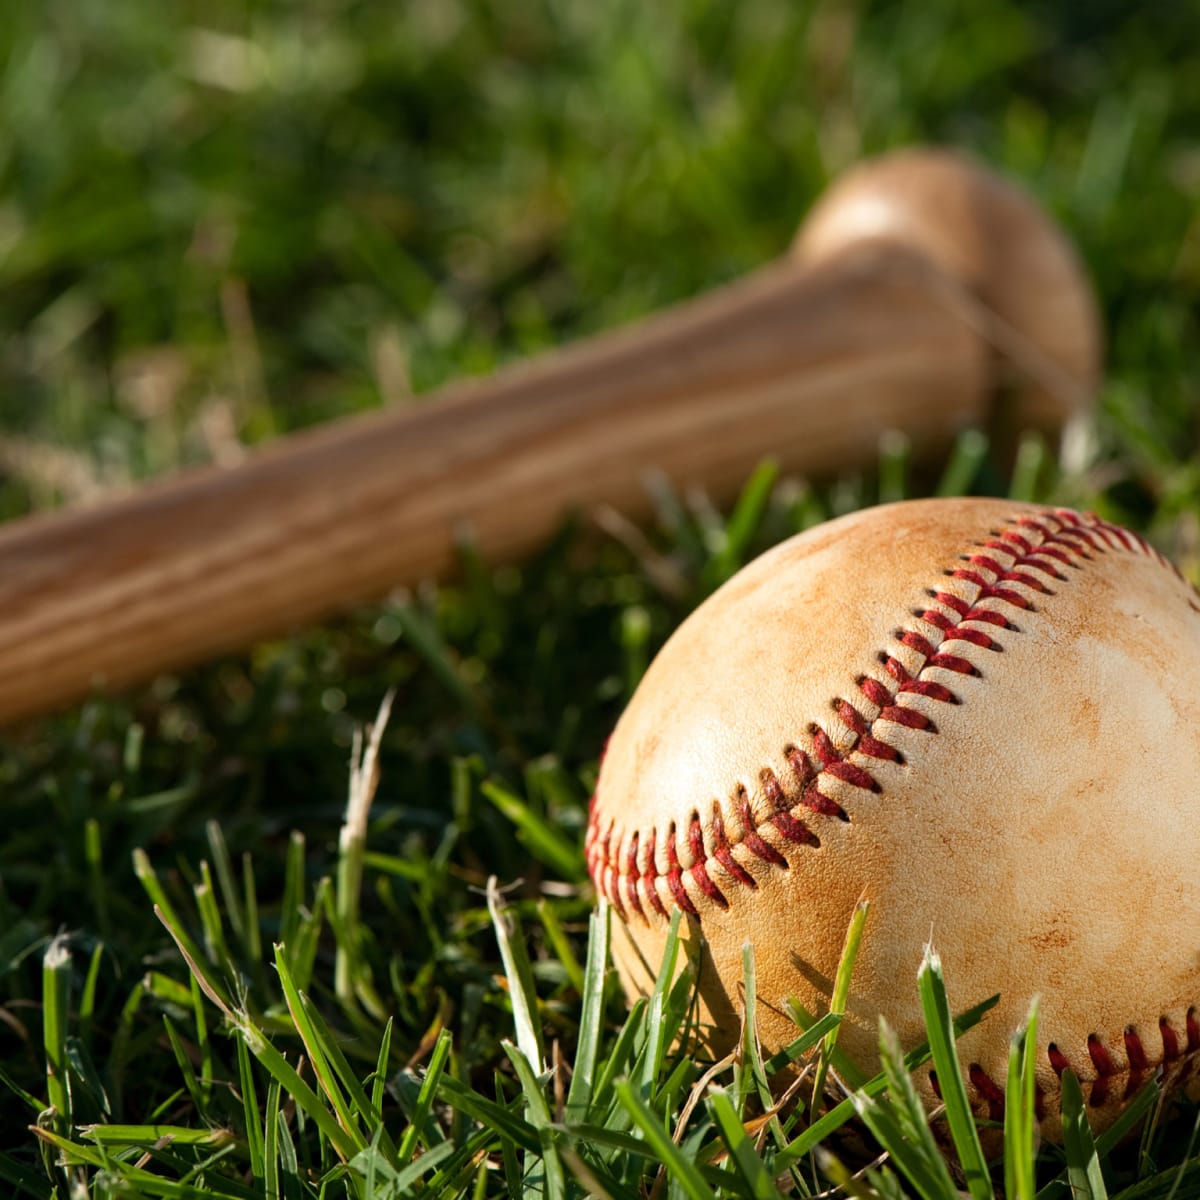 Chronique Baseball: La lutte aux séries est excitante